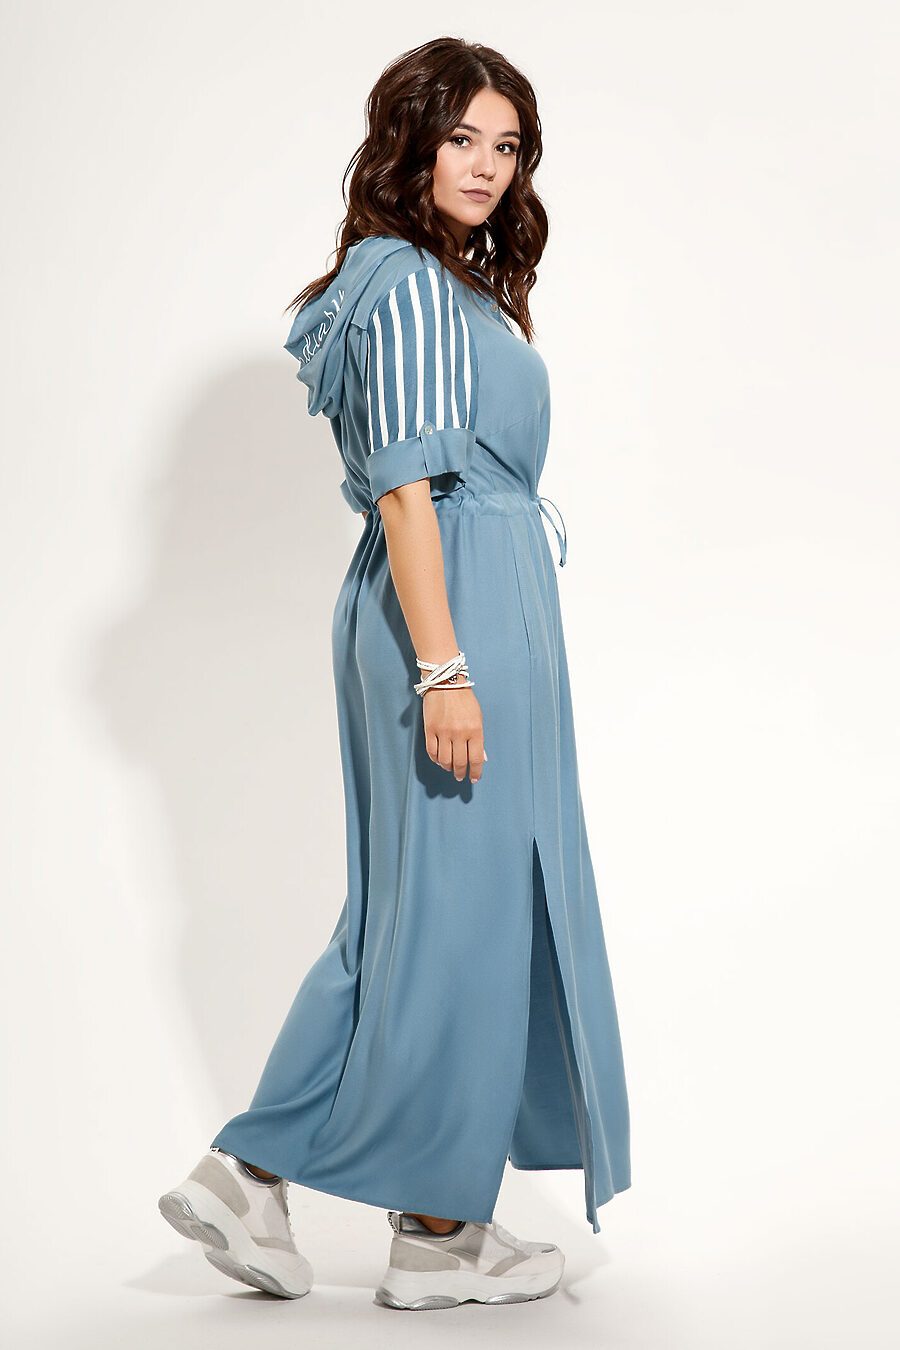 Платье для женщин PANDA 685852 купить оптом от производителя. Совместная покупка женской одежды в OptMoyo